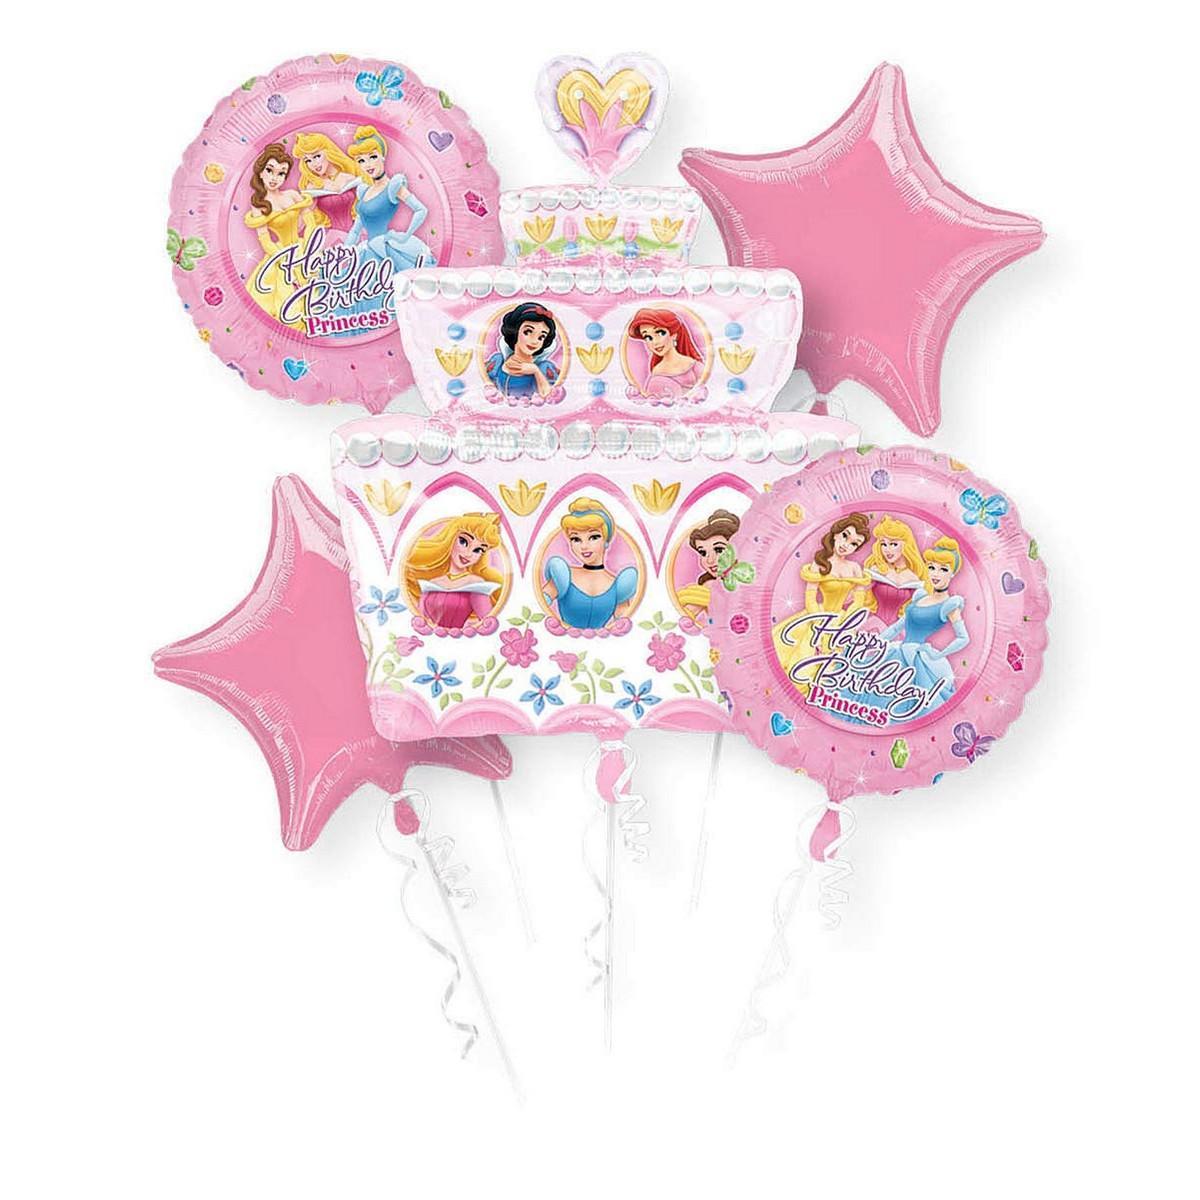 Disney Princess Birthday Cake Balloon Bouquet (Pink/White) (One Size)